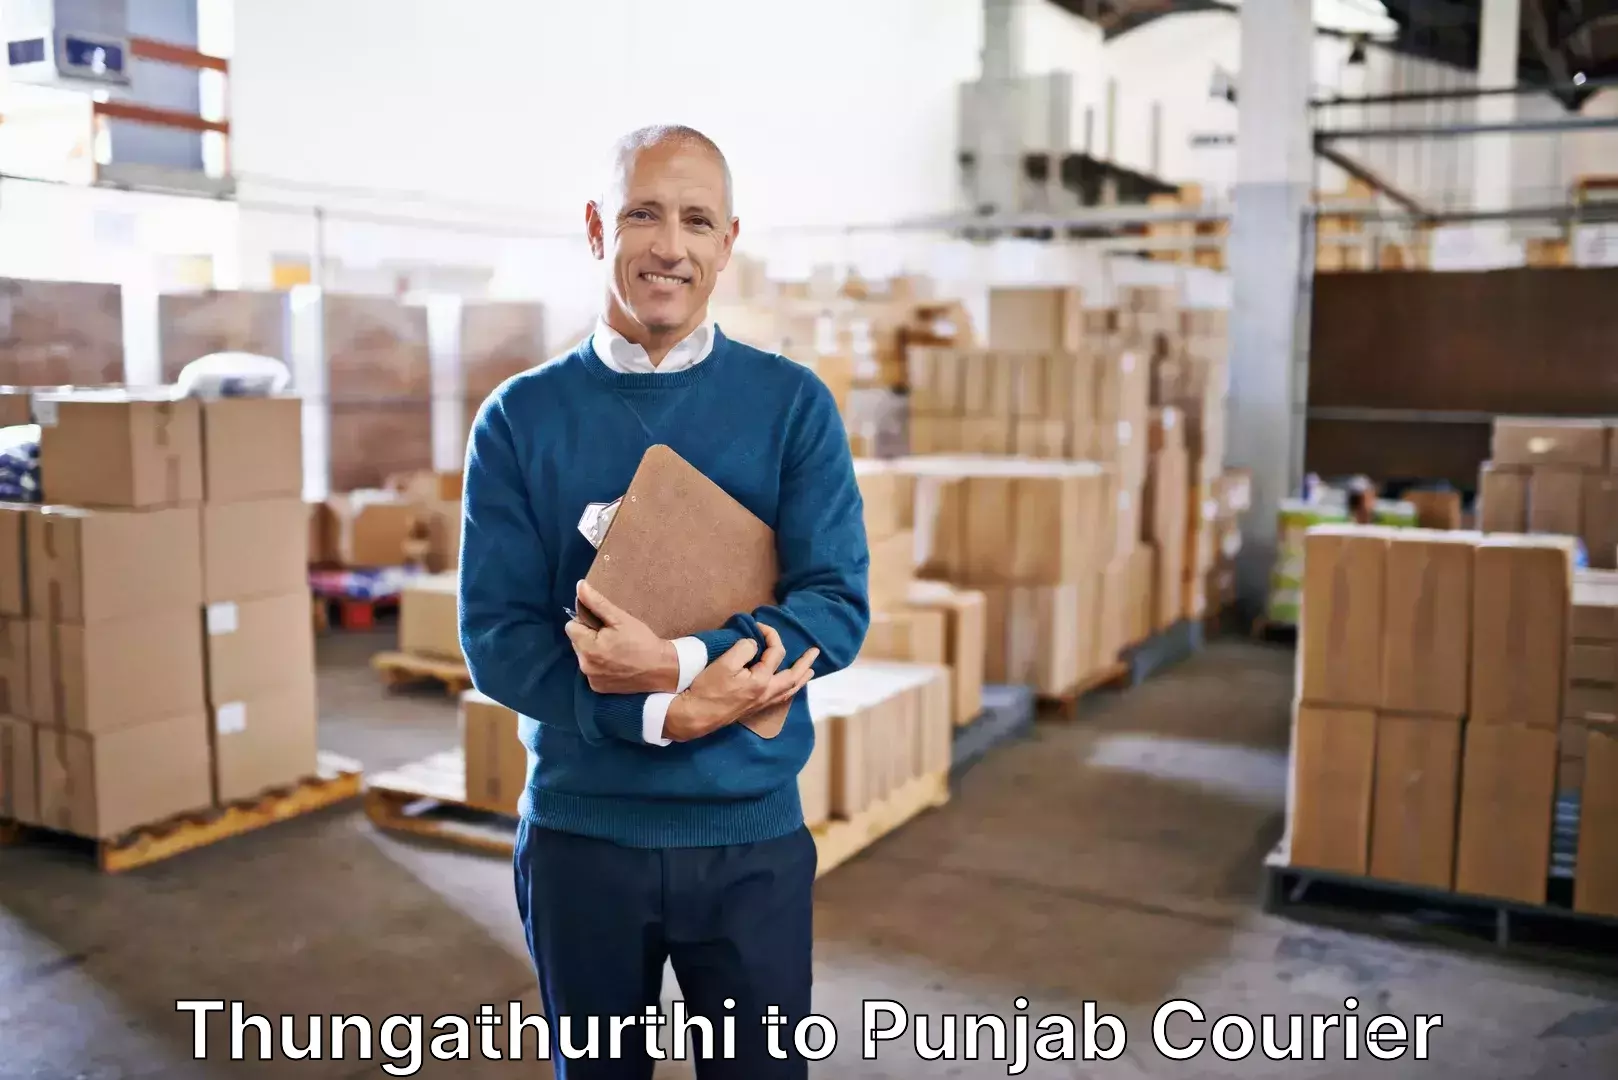 Affordable luggage shipping in Thungathurthi to Punjab